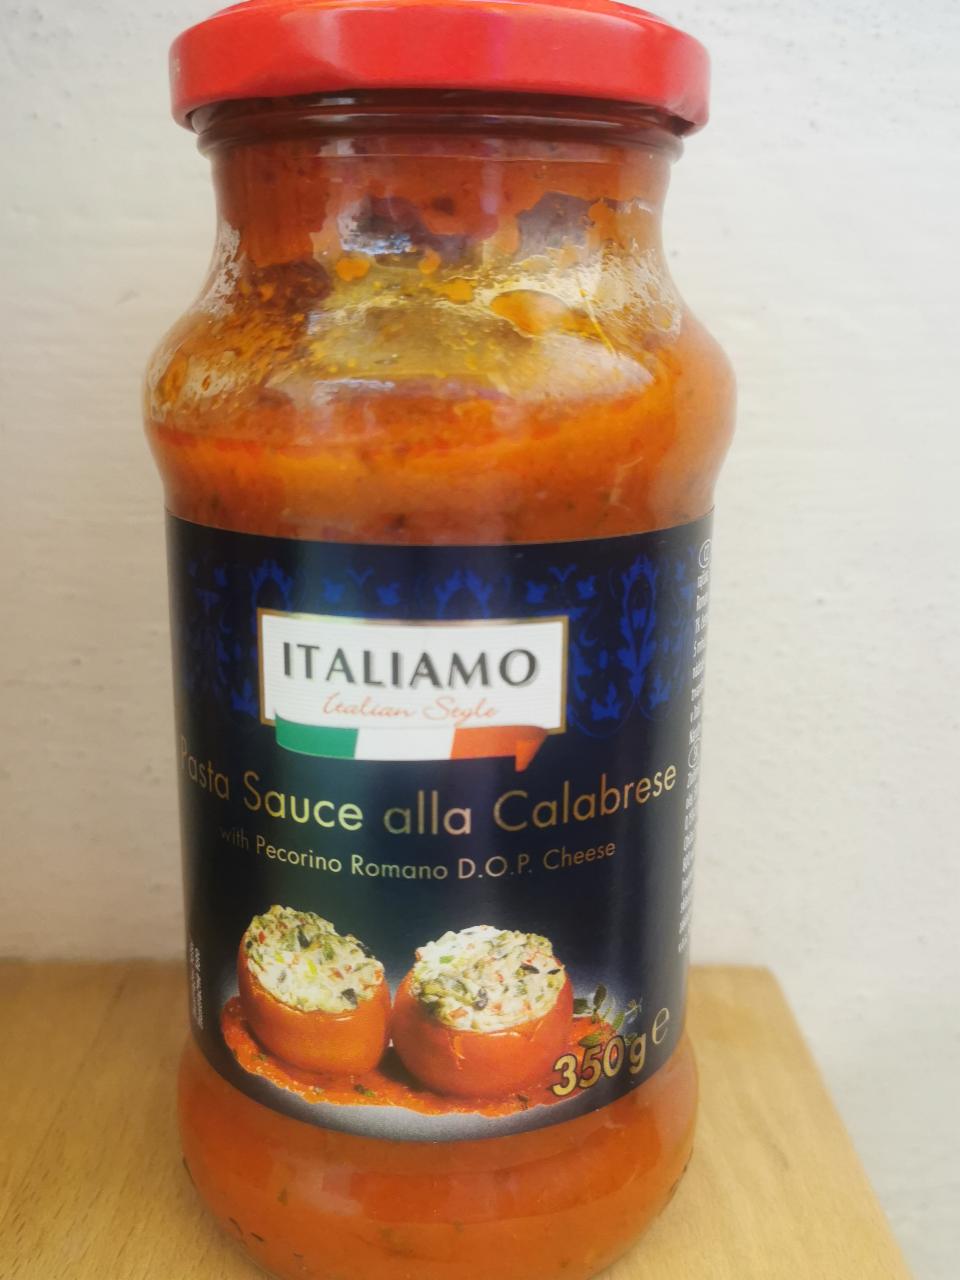 Zdjęcia - Tomato Sauce alla Calabrese Italiamo